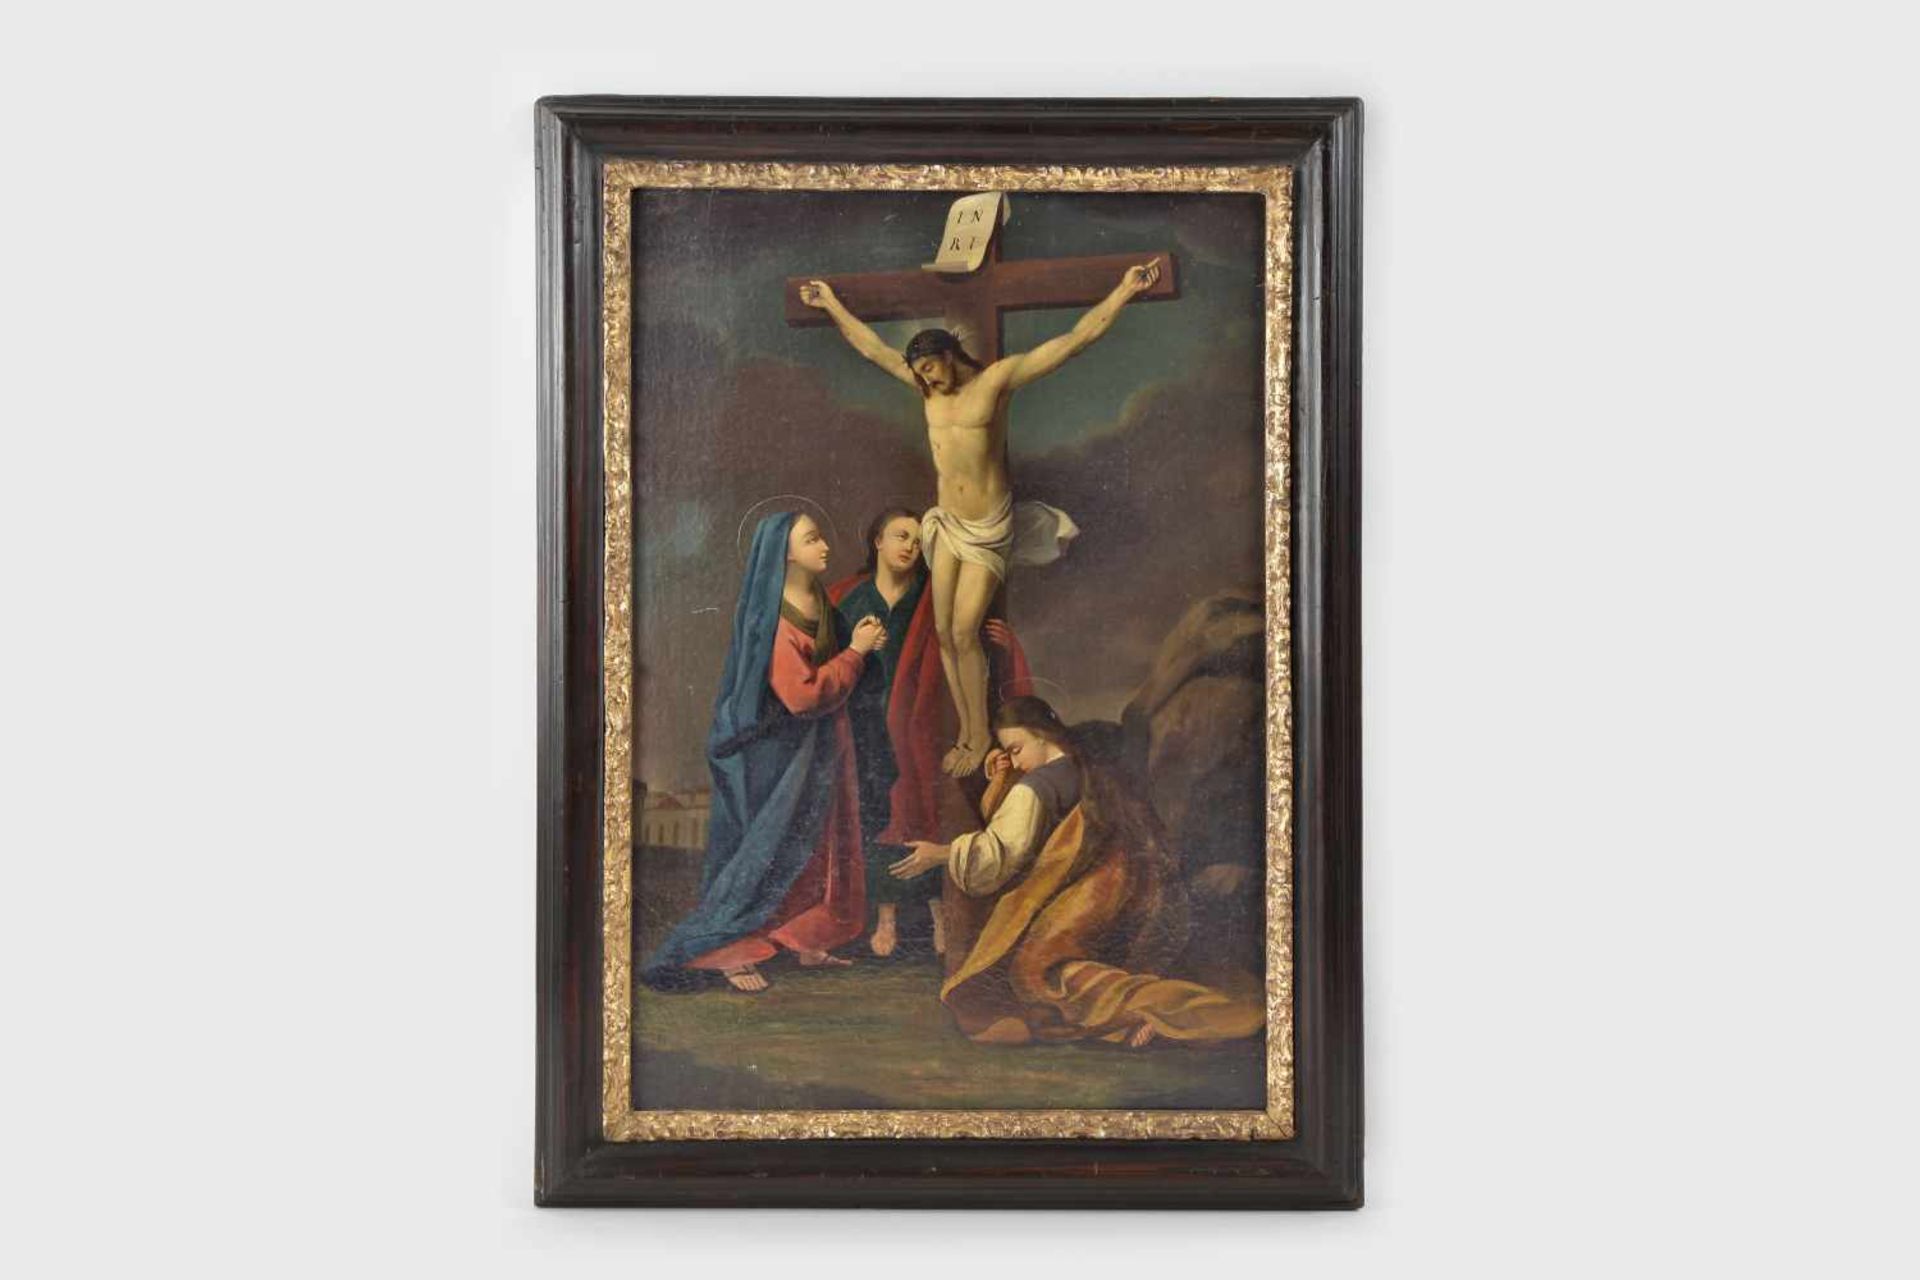 Künstler Ende 19.Jh.Die Beweihnung Christi, Öl auf Leinwand, 61x42 cm, gerahmt;